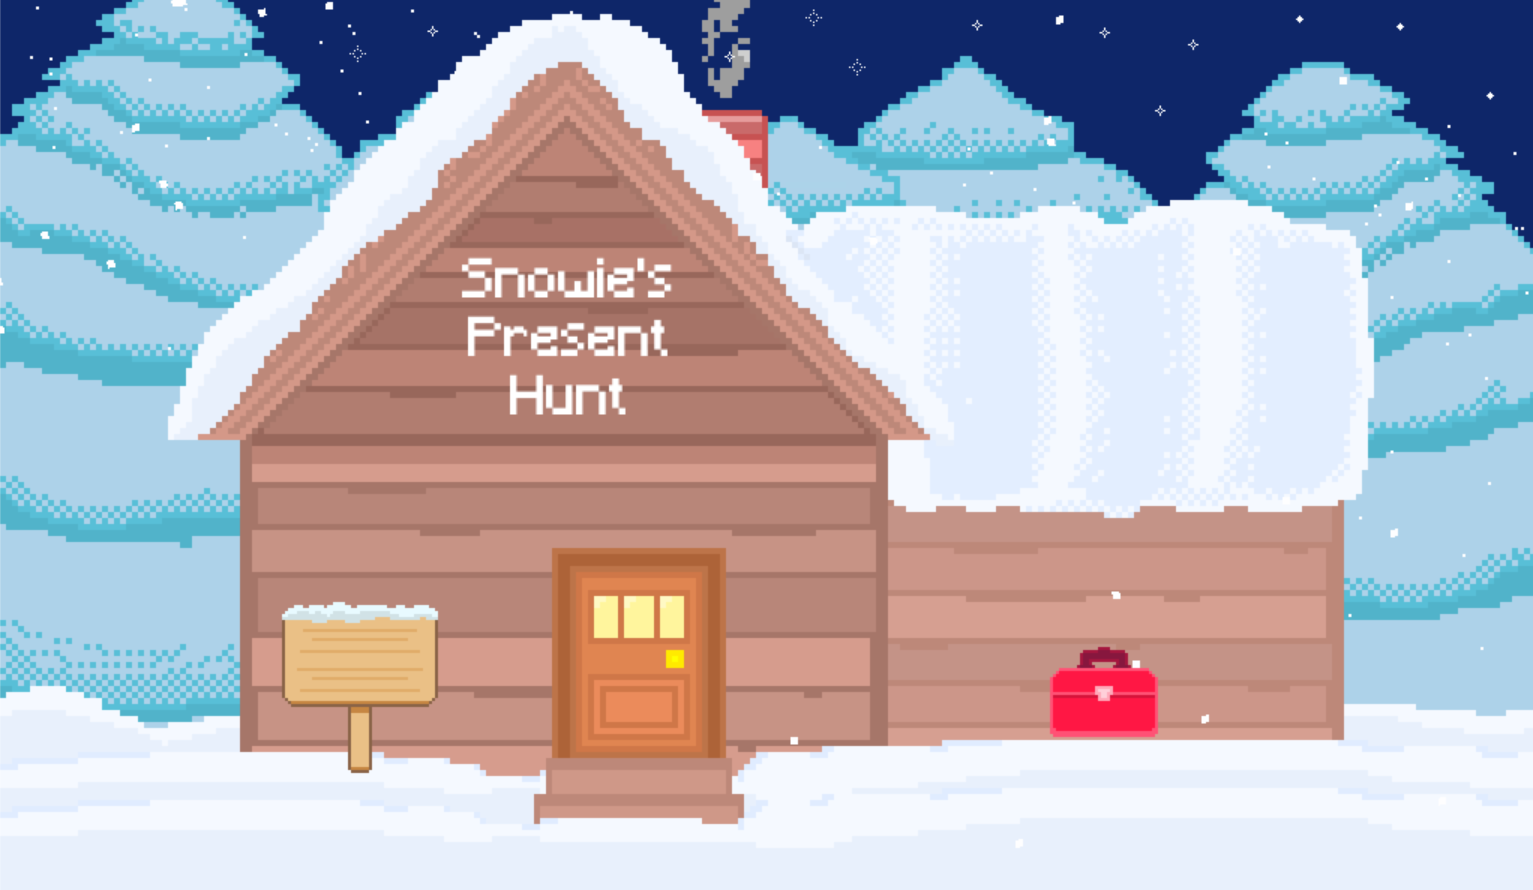 Snowie's Present Hunt